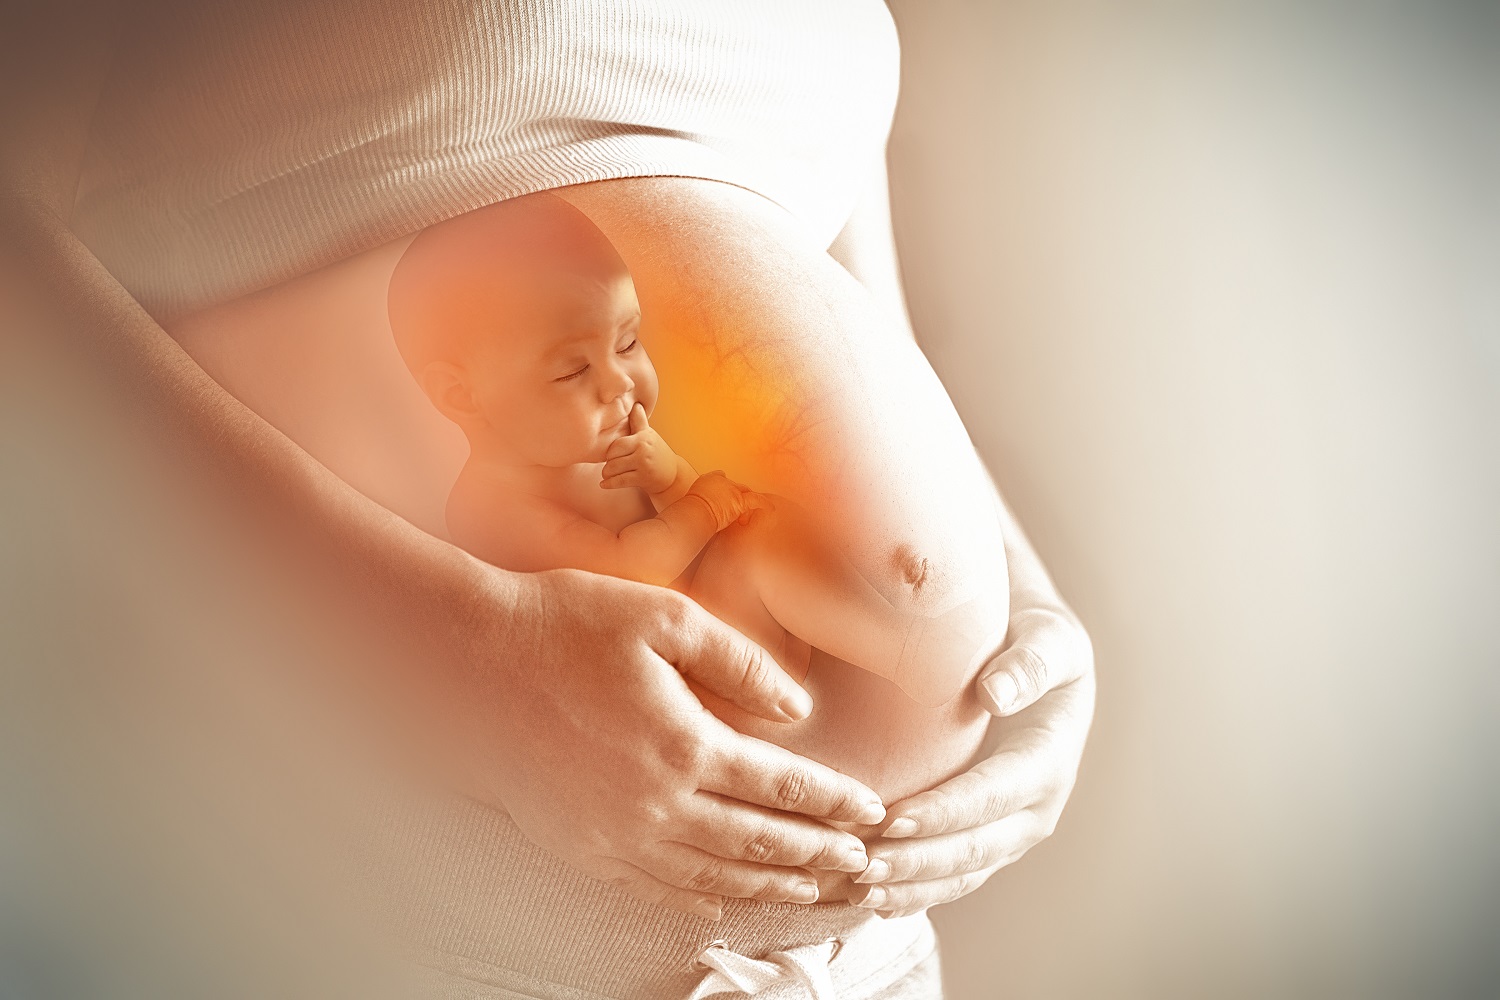 Mẹ có biết thai nhi làm gì trong bụng mẹ không?